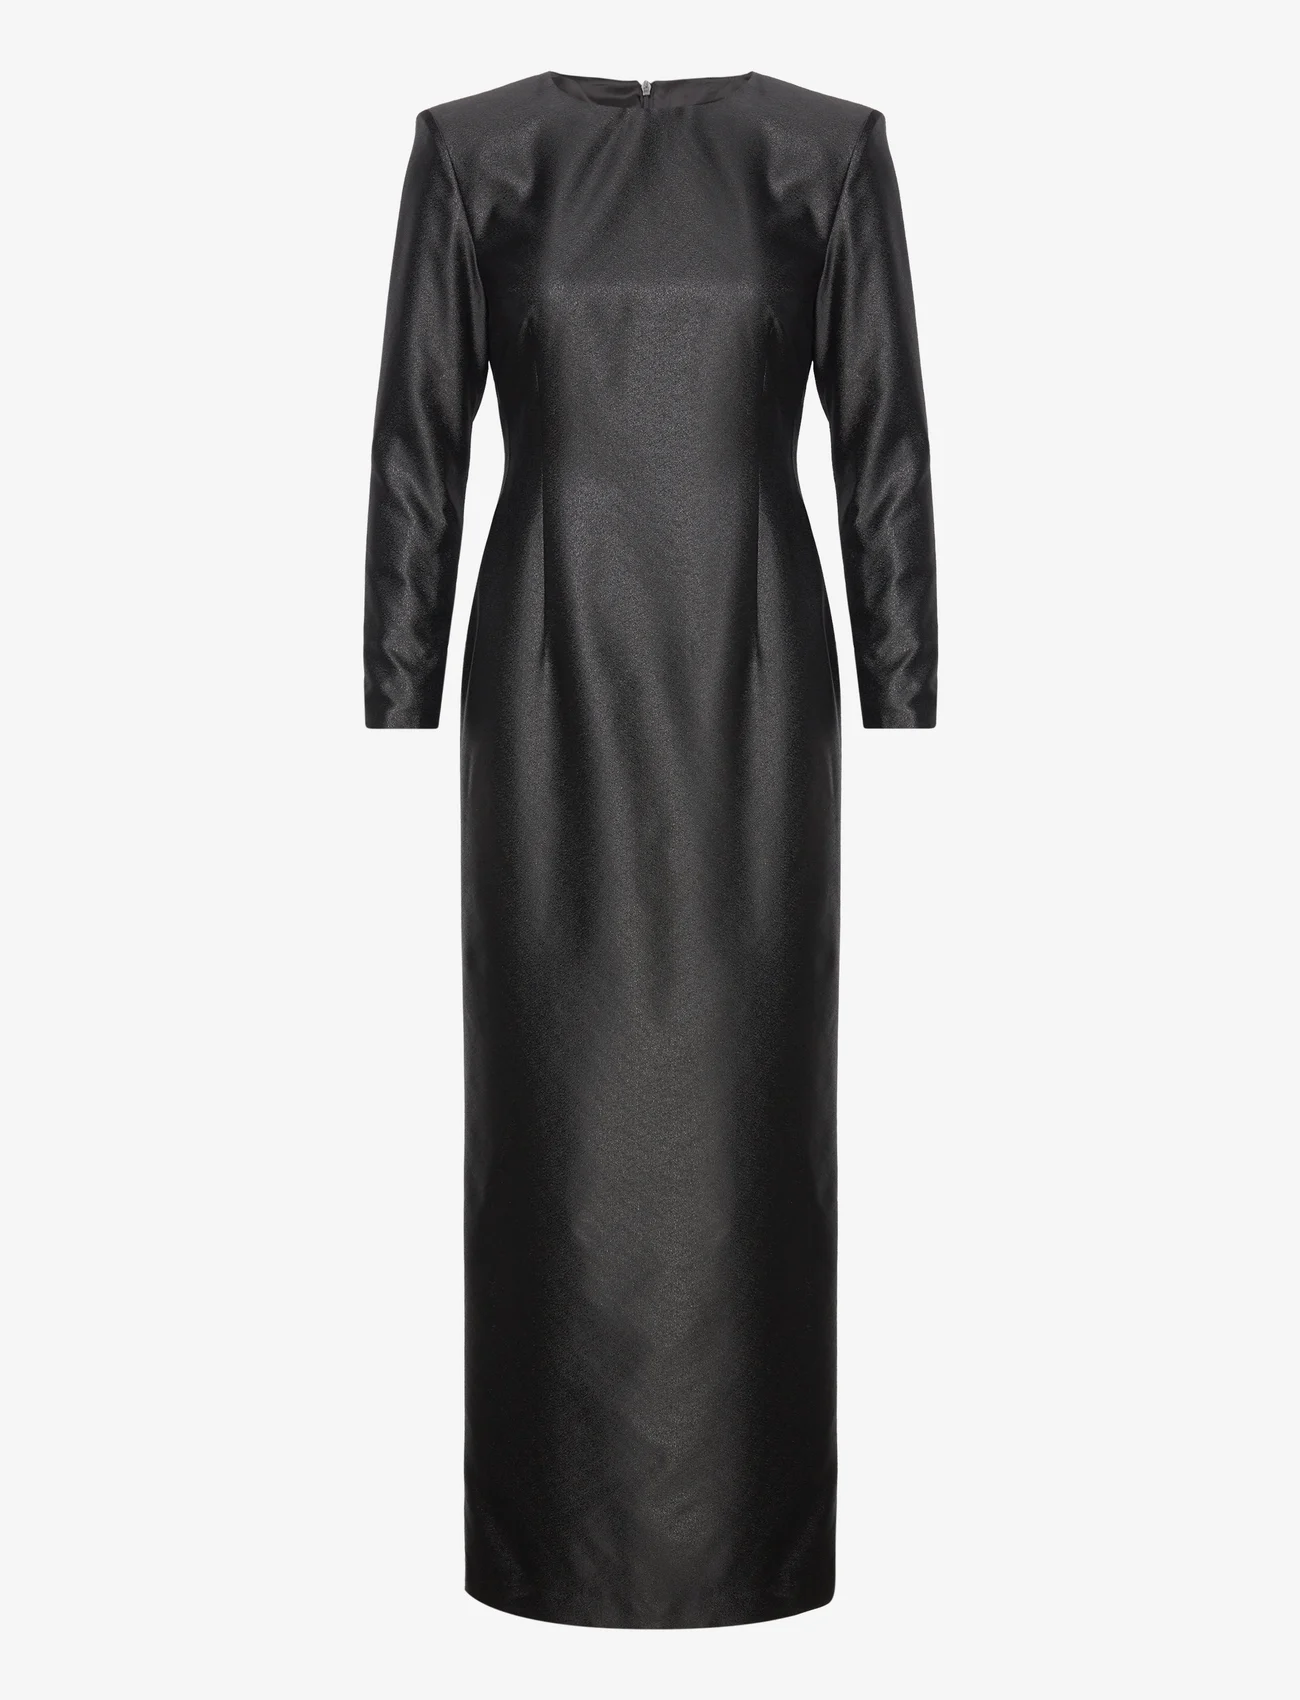 hálo - KAAMOS maxi dress - feestelijke kleding voor outlet-prijzen - shimmering black - 0